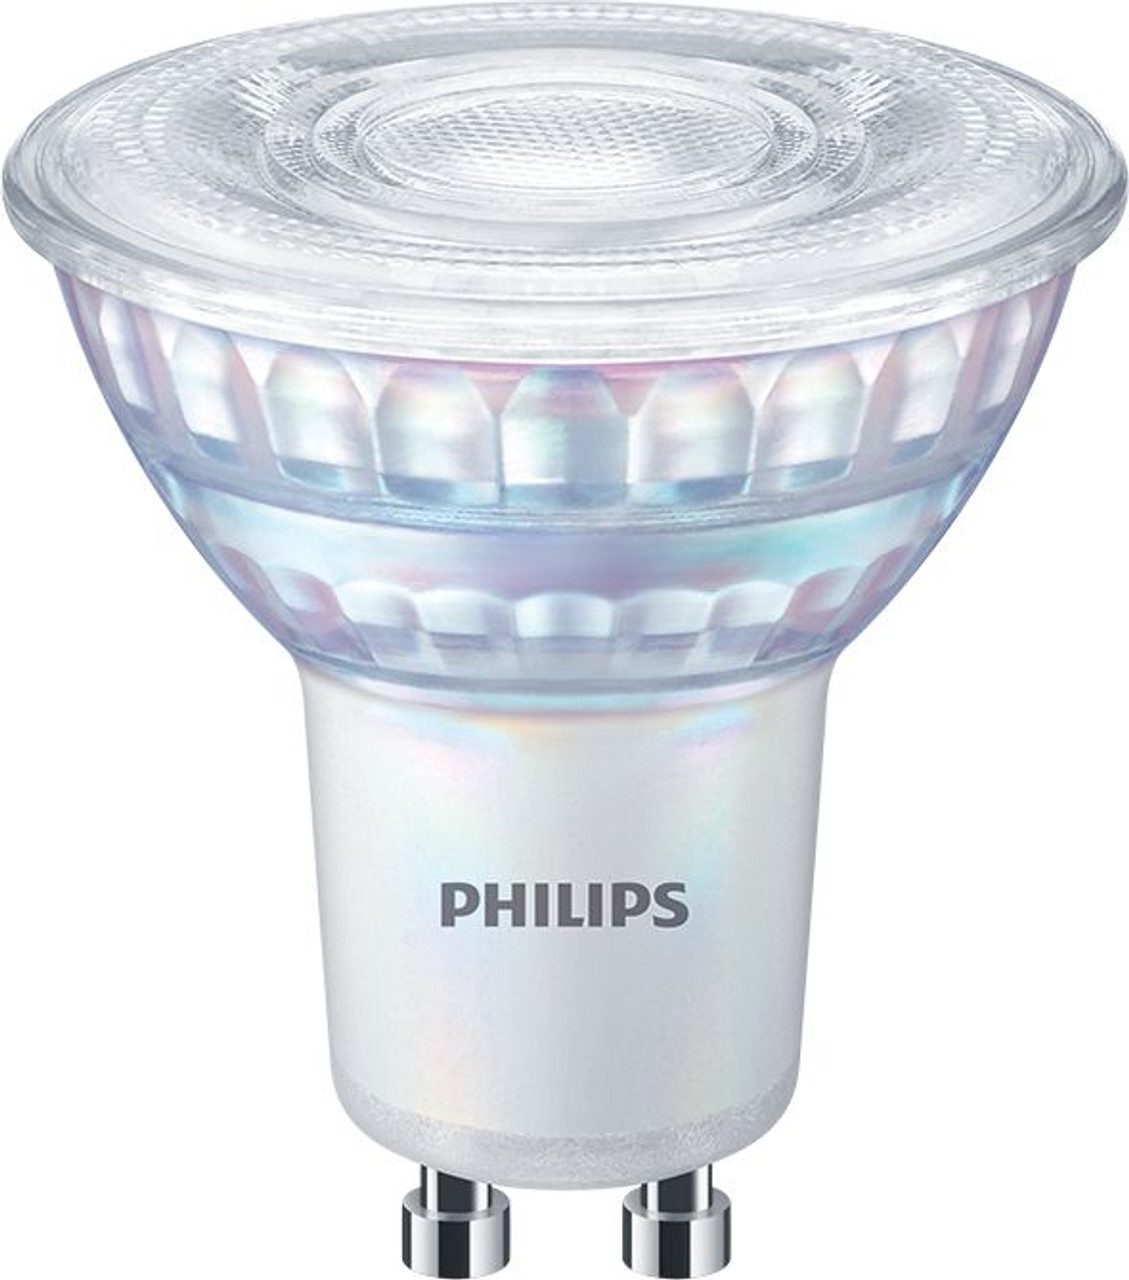 rundvlees slaap Verliefd Philips Lighting MASTER LED spot VLE D 7-80W GU10 927 36D LED Spots